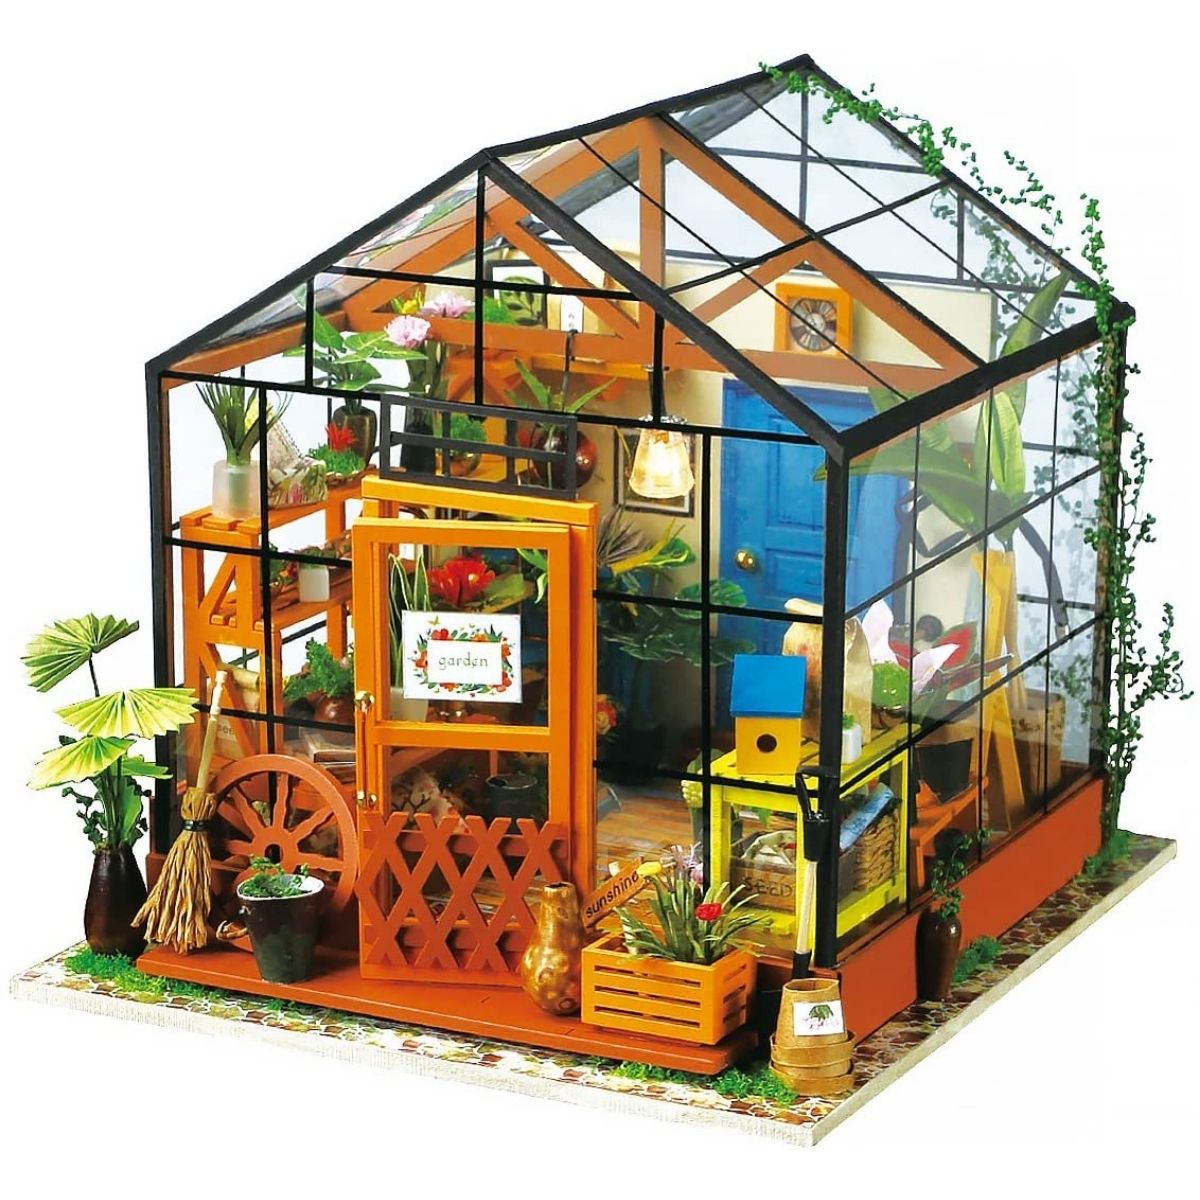 DIY Miniature House Cathy’s Flower House